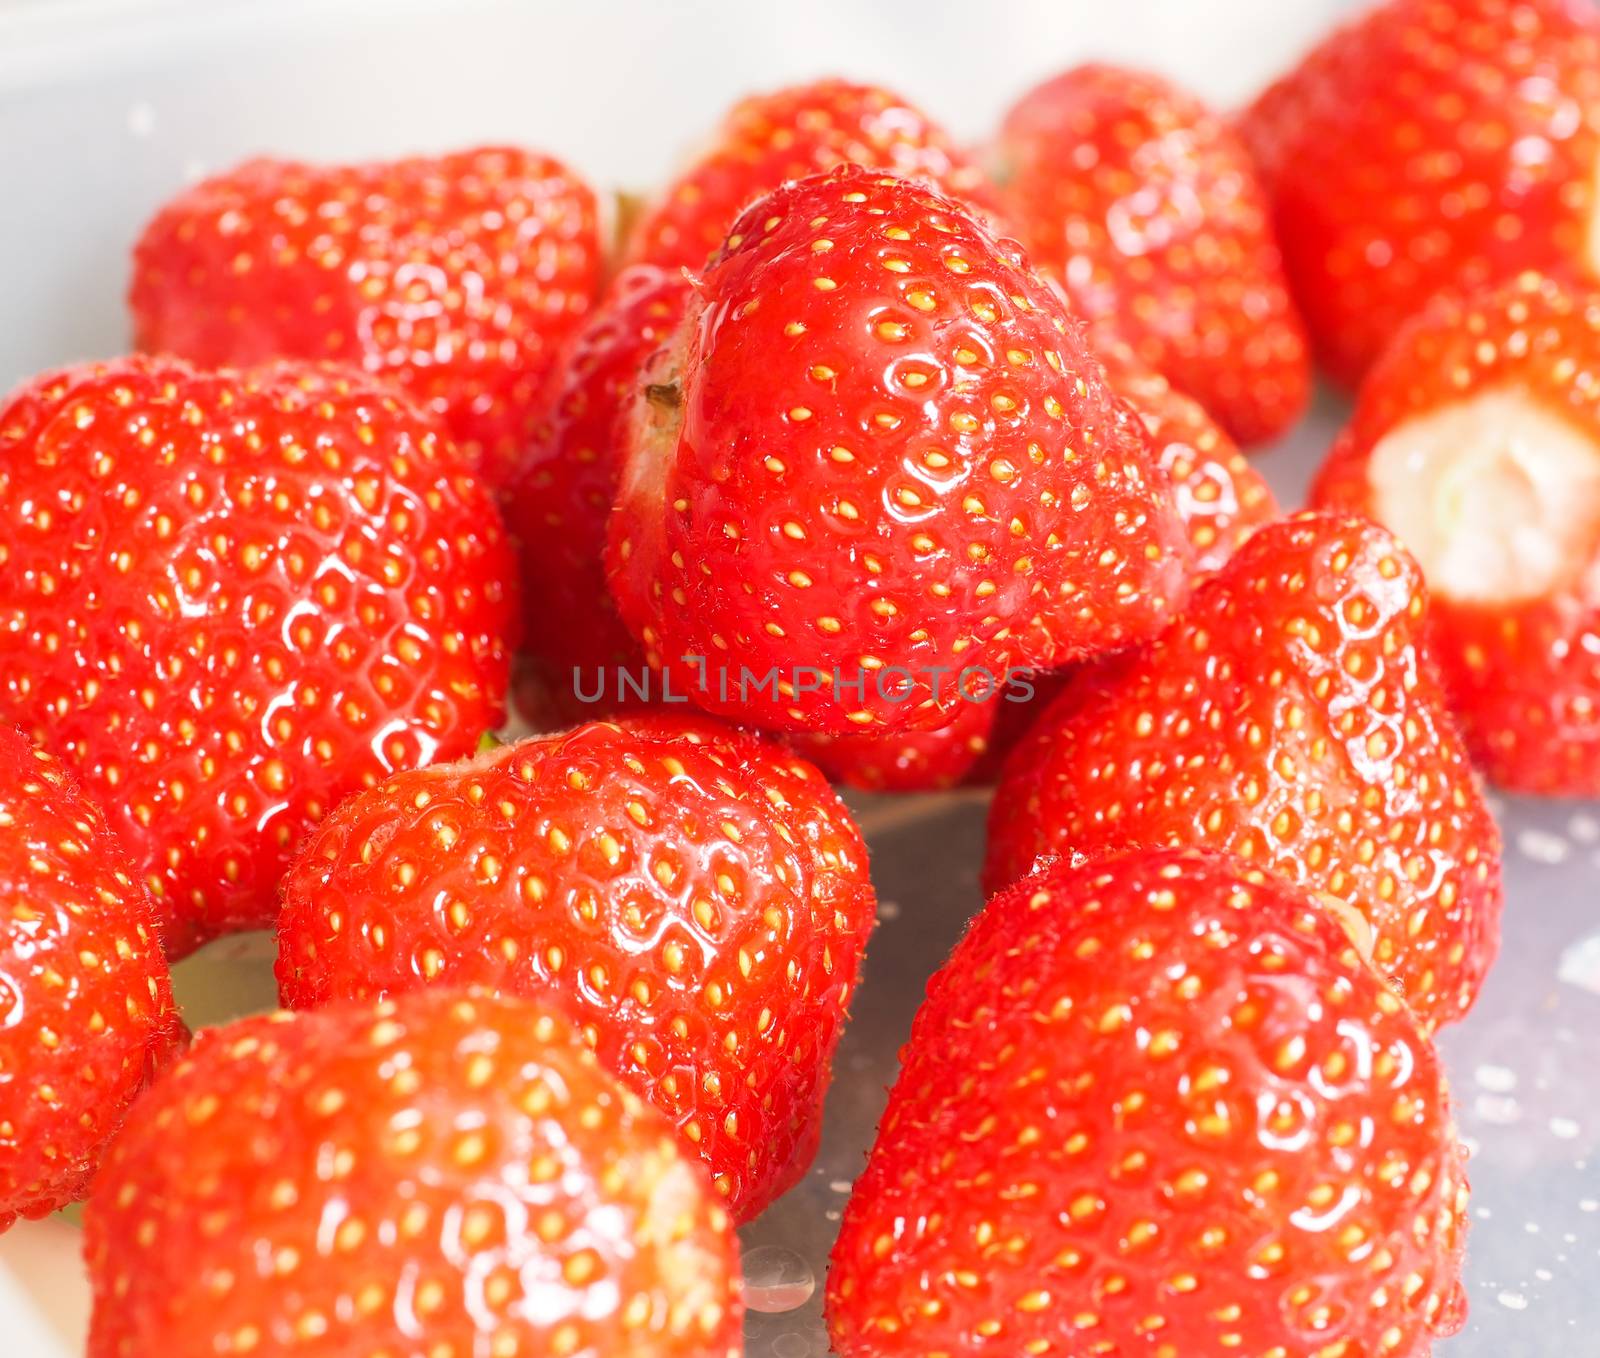 Fresh red strawberries by Arvebettum